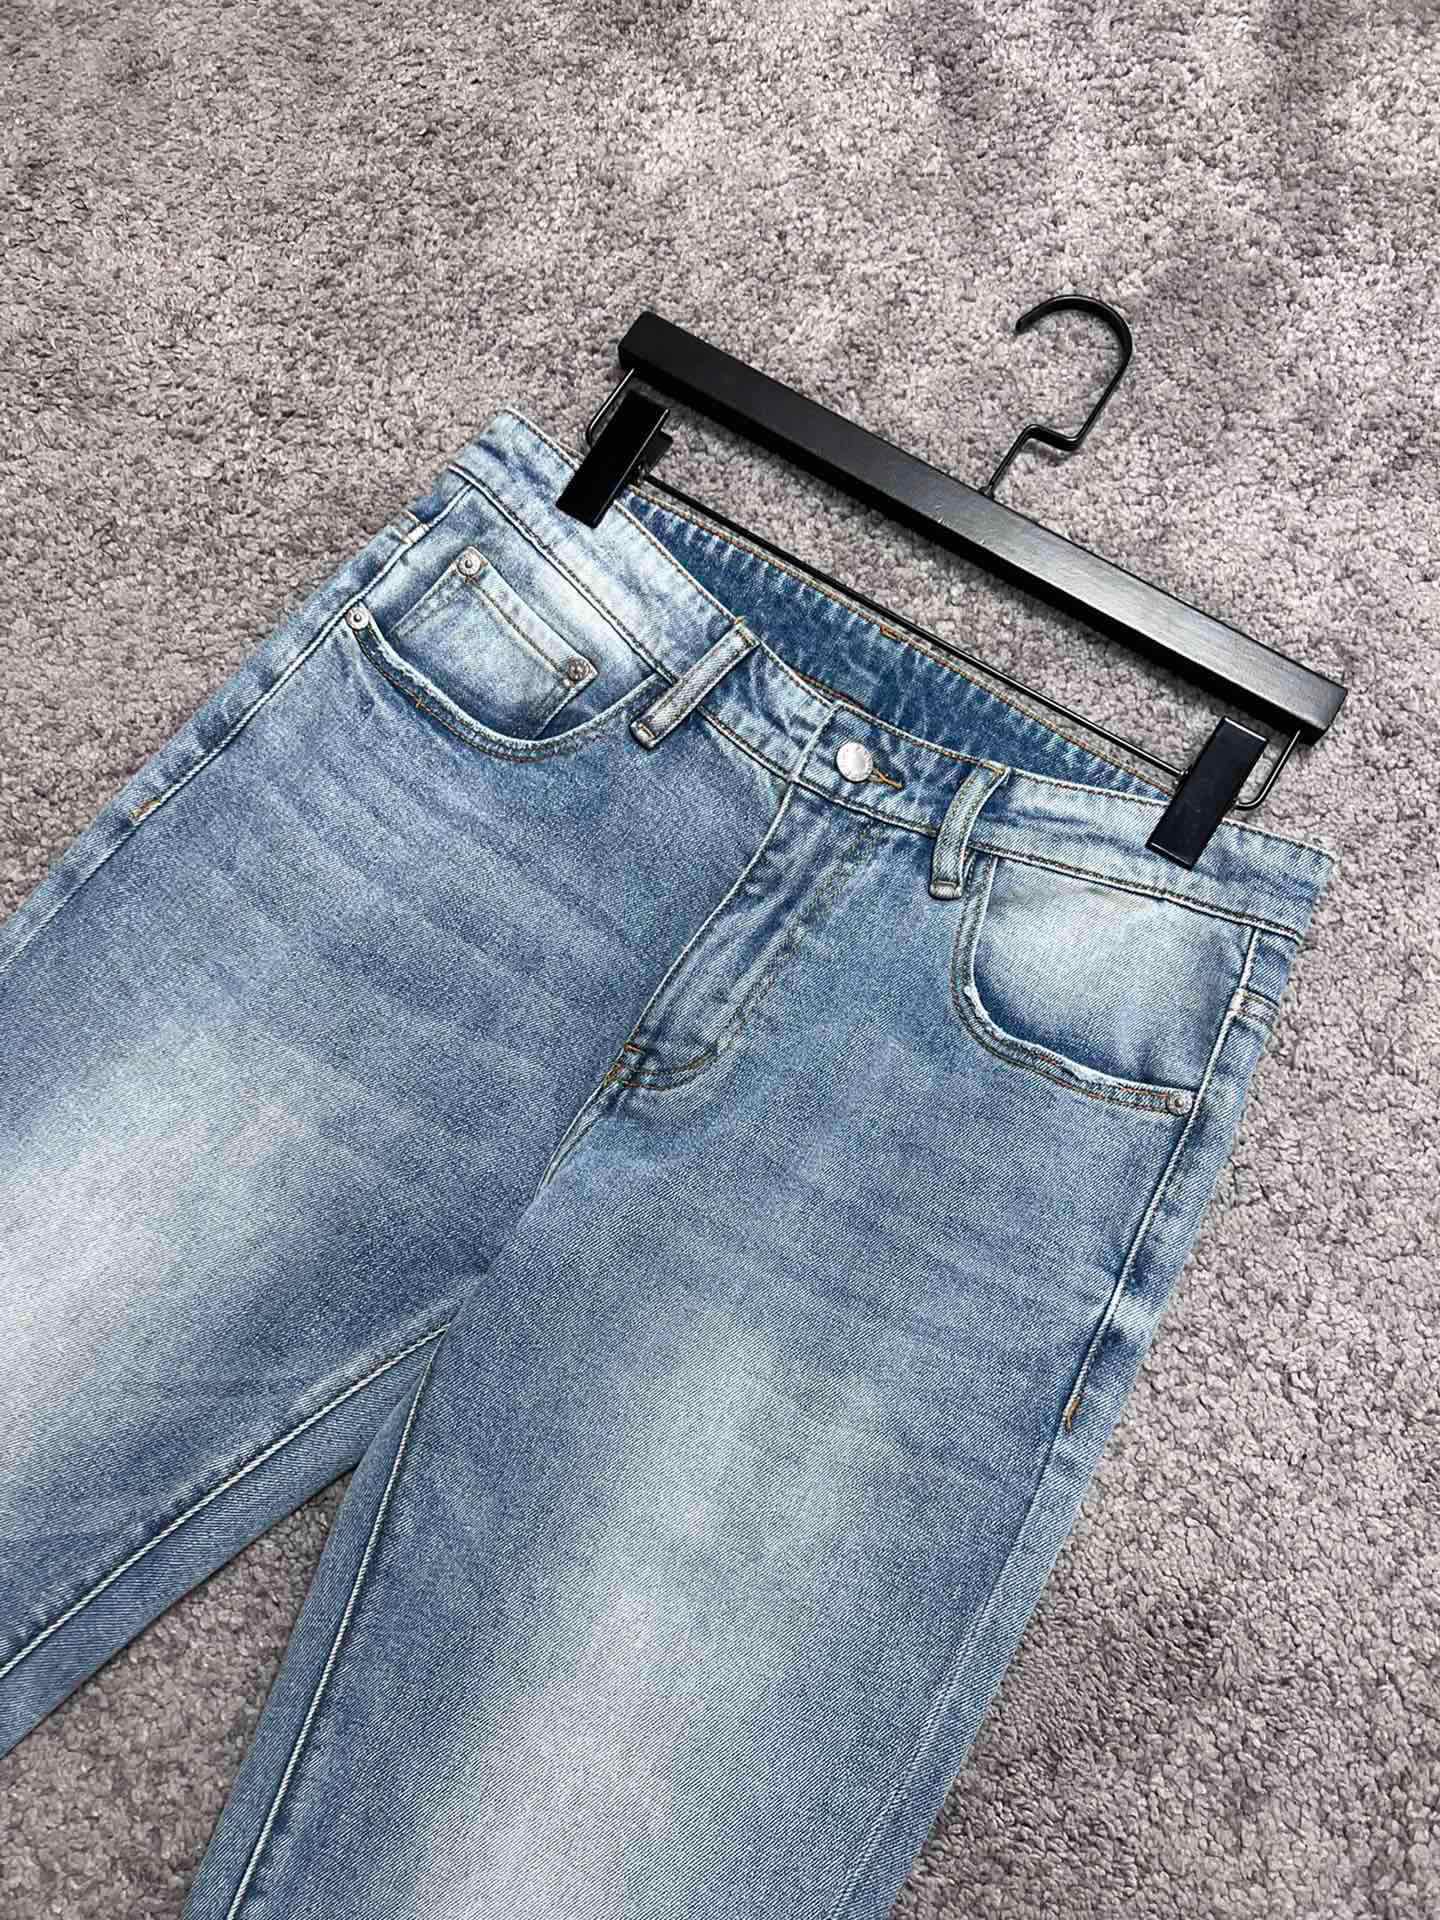 P家新款牛仔裤高端品质面料带弹力独特的洗水颜色潮流必备单品时尚百搭码数:30313233343638